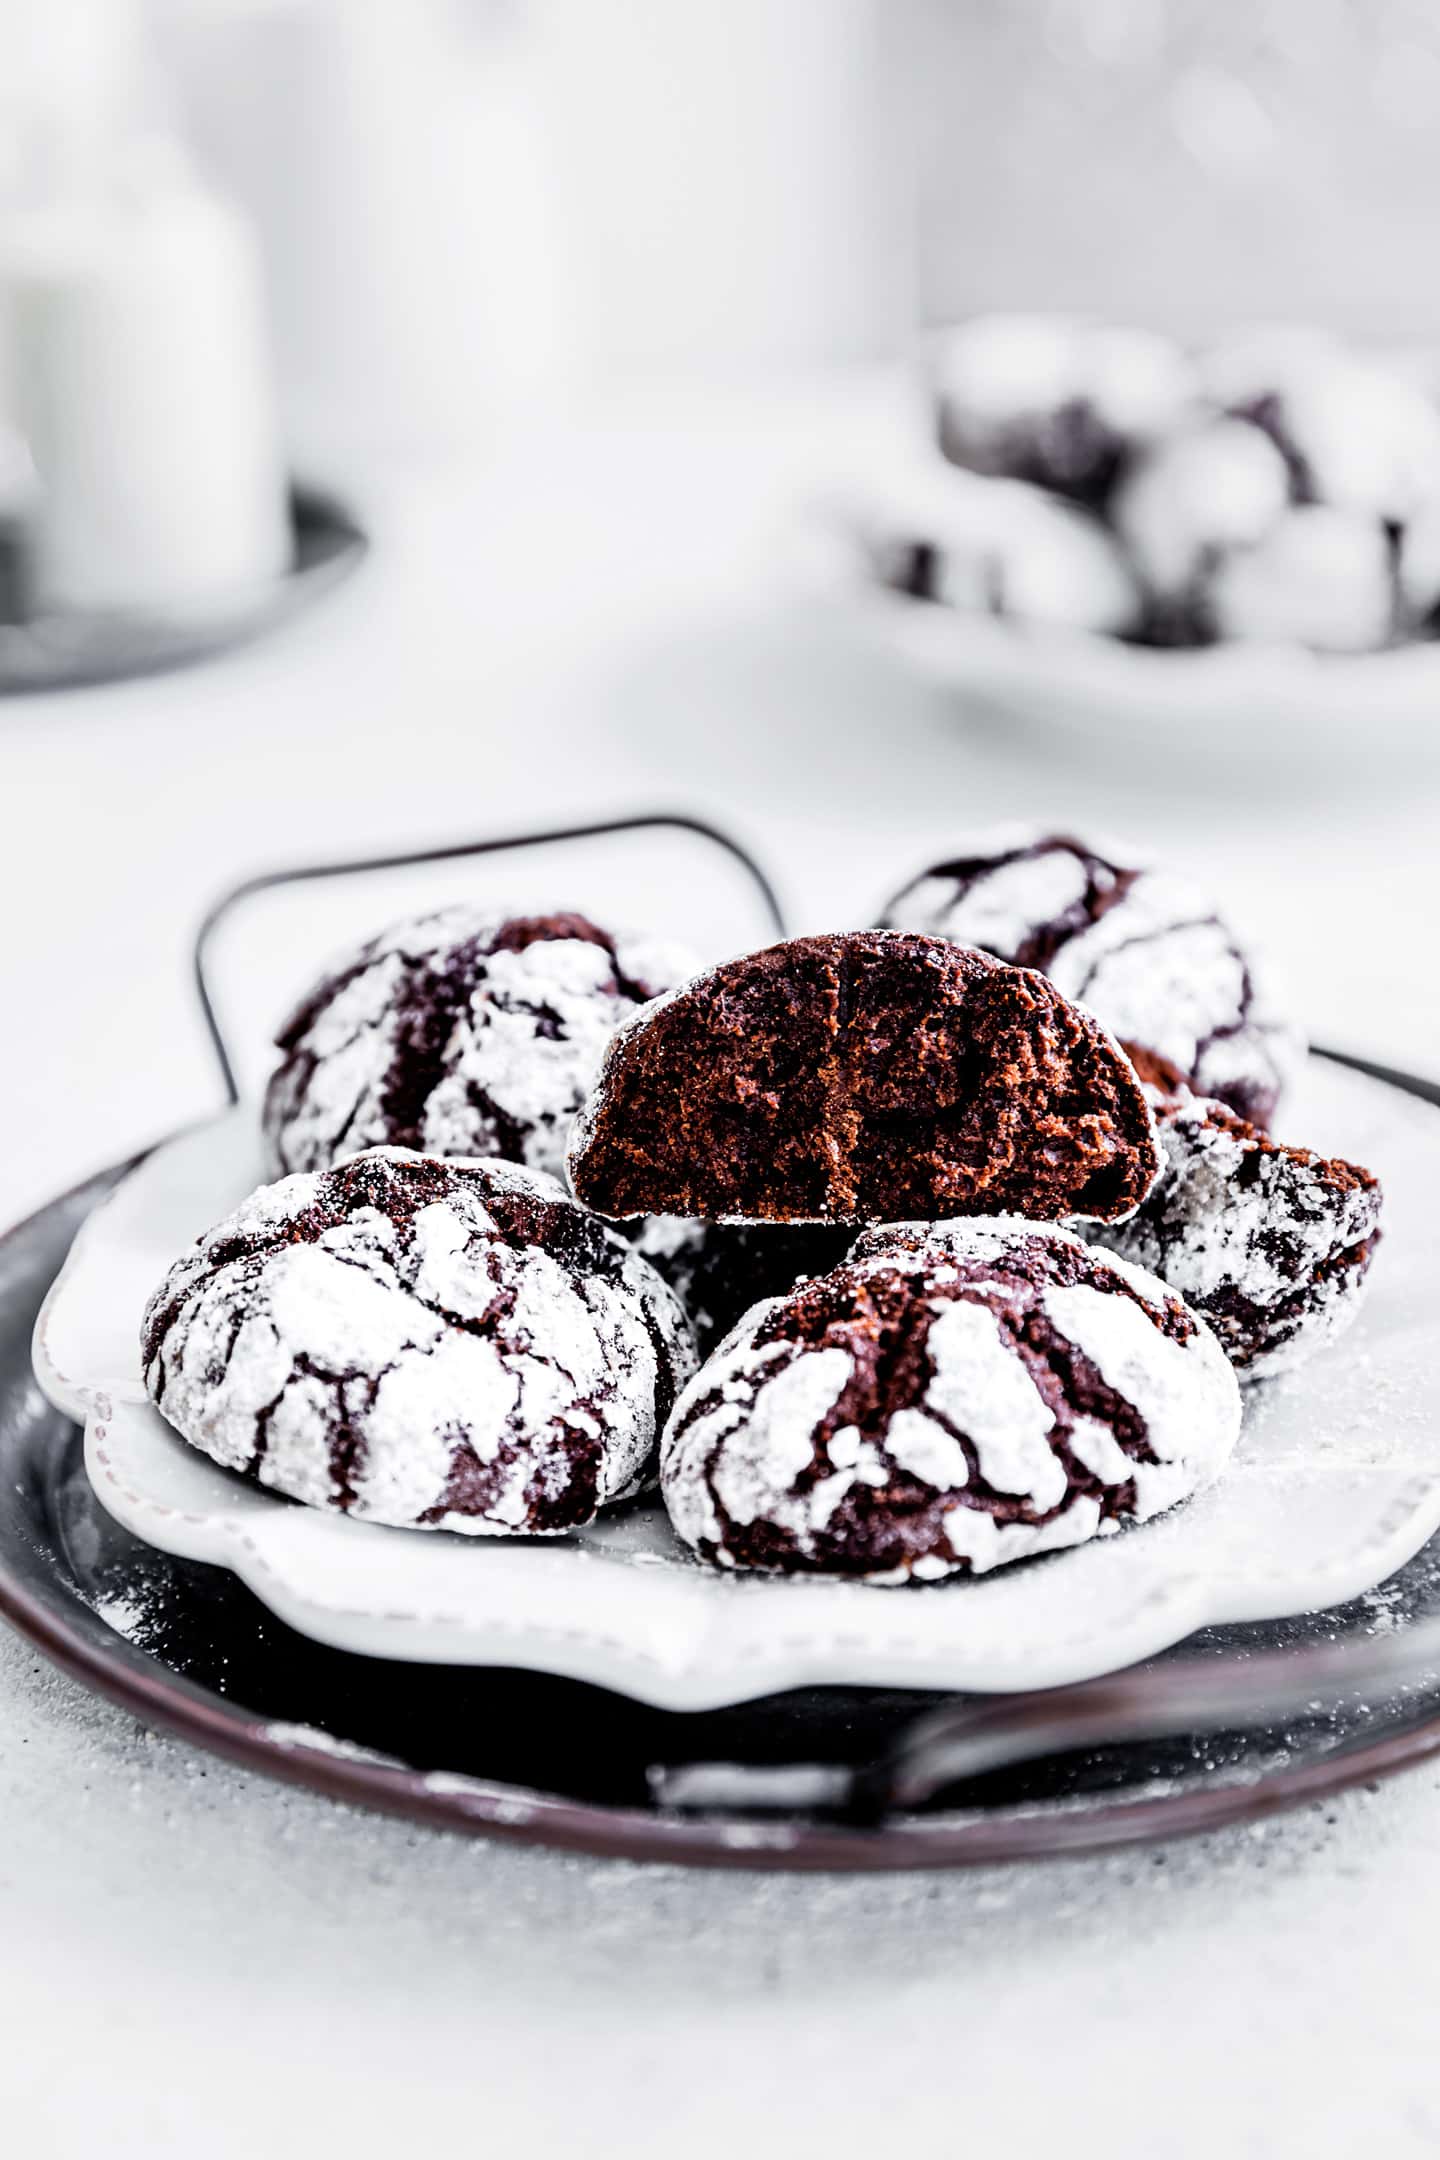 Chocolate crinkles cookies recipe